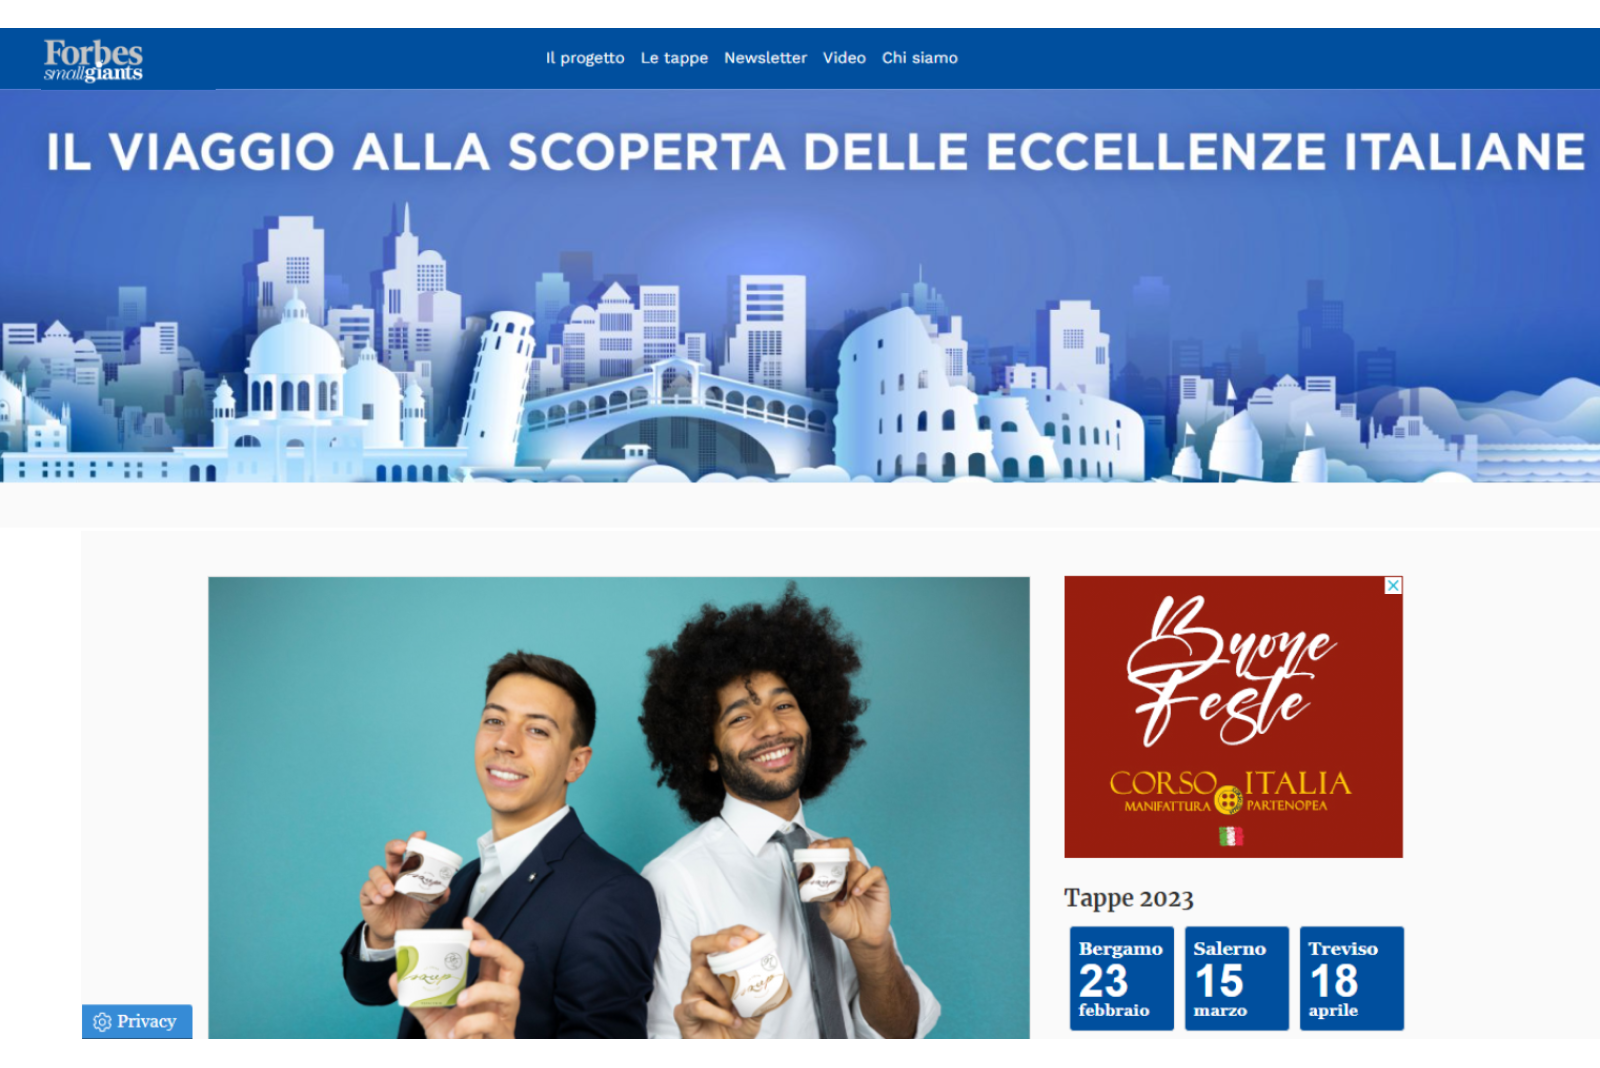 CORSO ITALIA speciale marketing con Forbes Small Giants